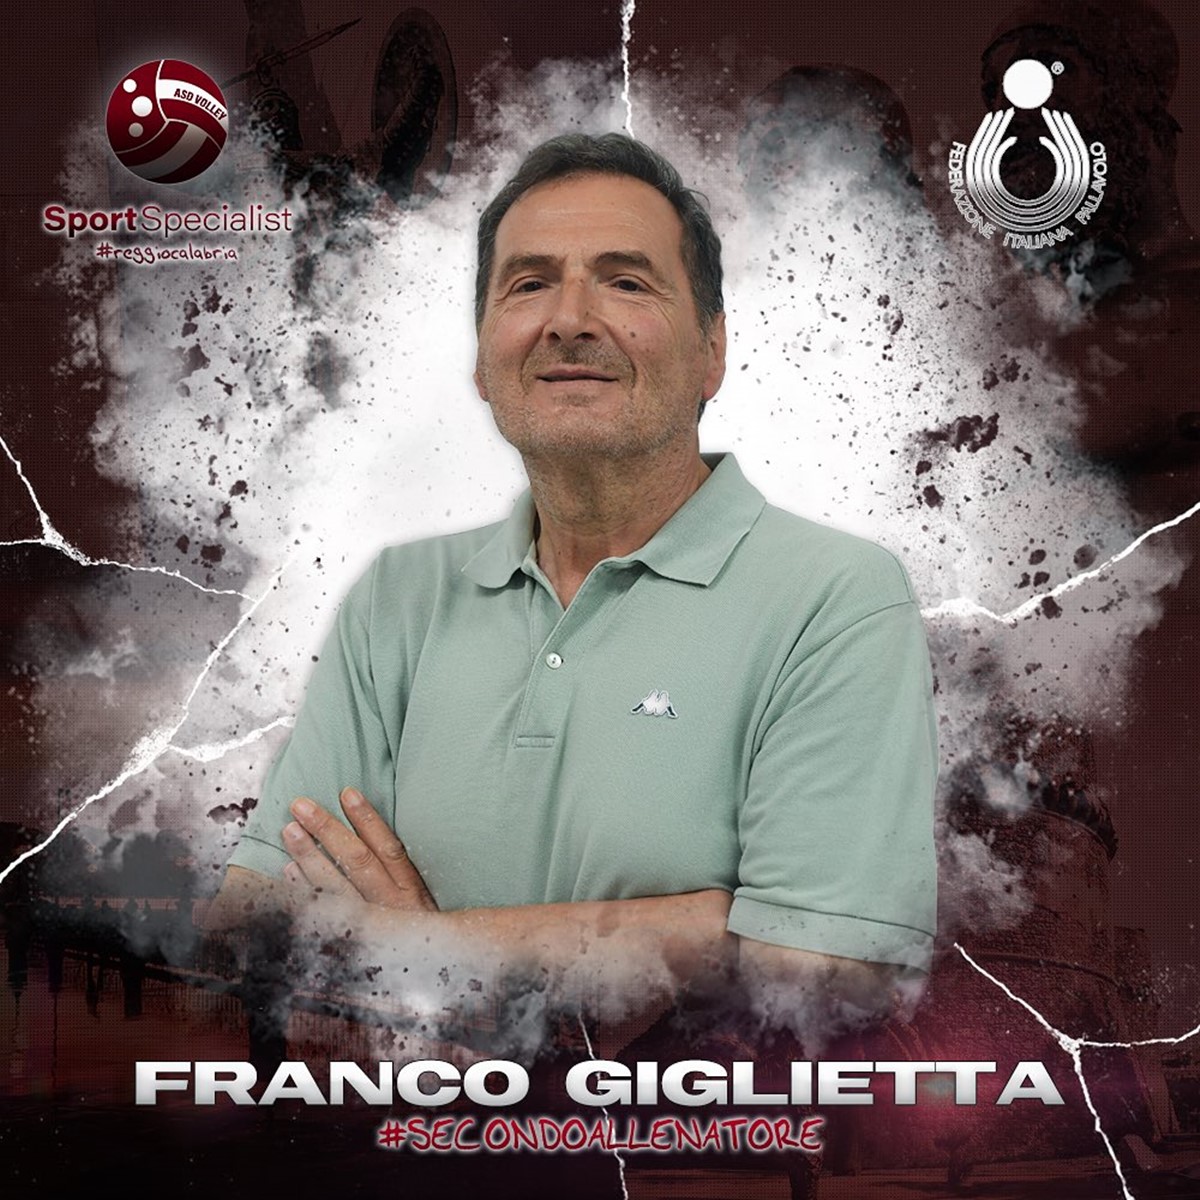 Pallavolo, Mister Franco Giglietta: esperienza e conoscenza per far grande la SportSpecialist